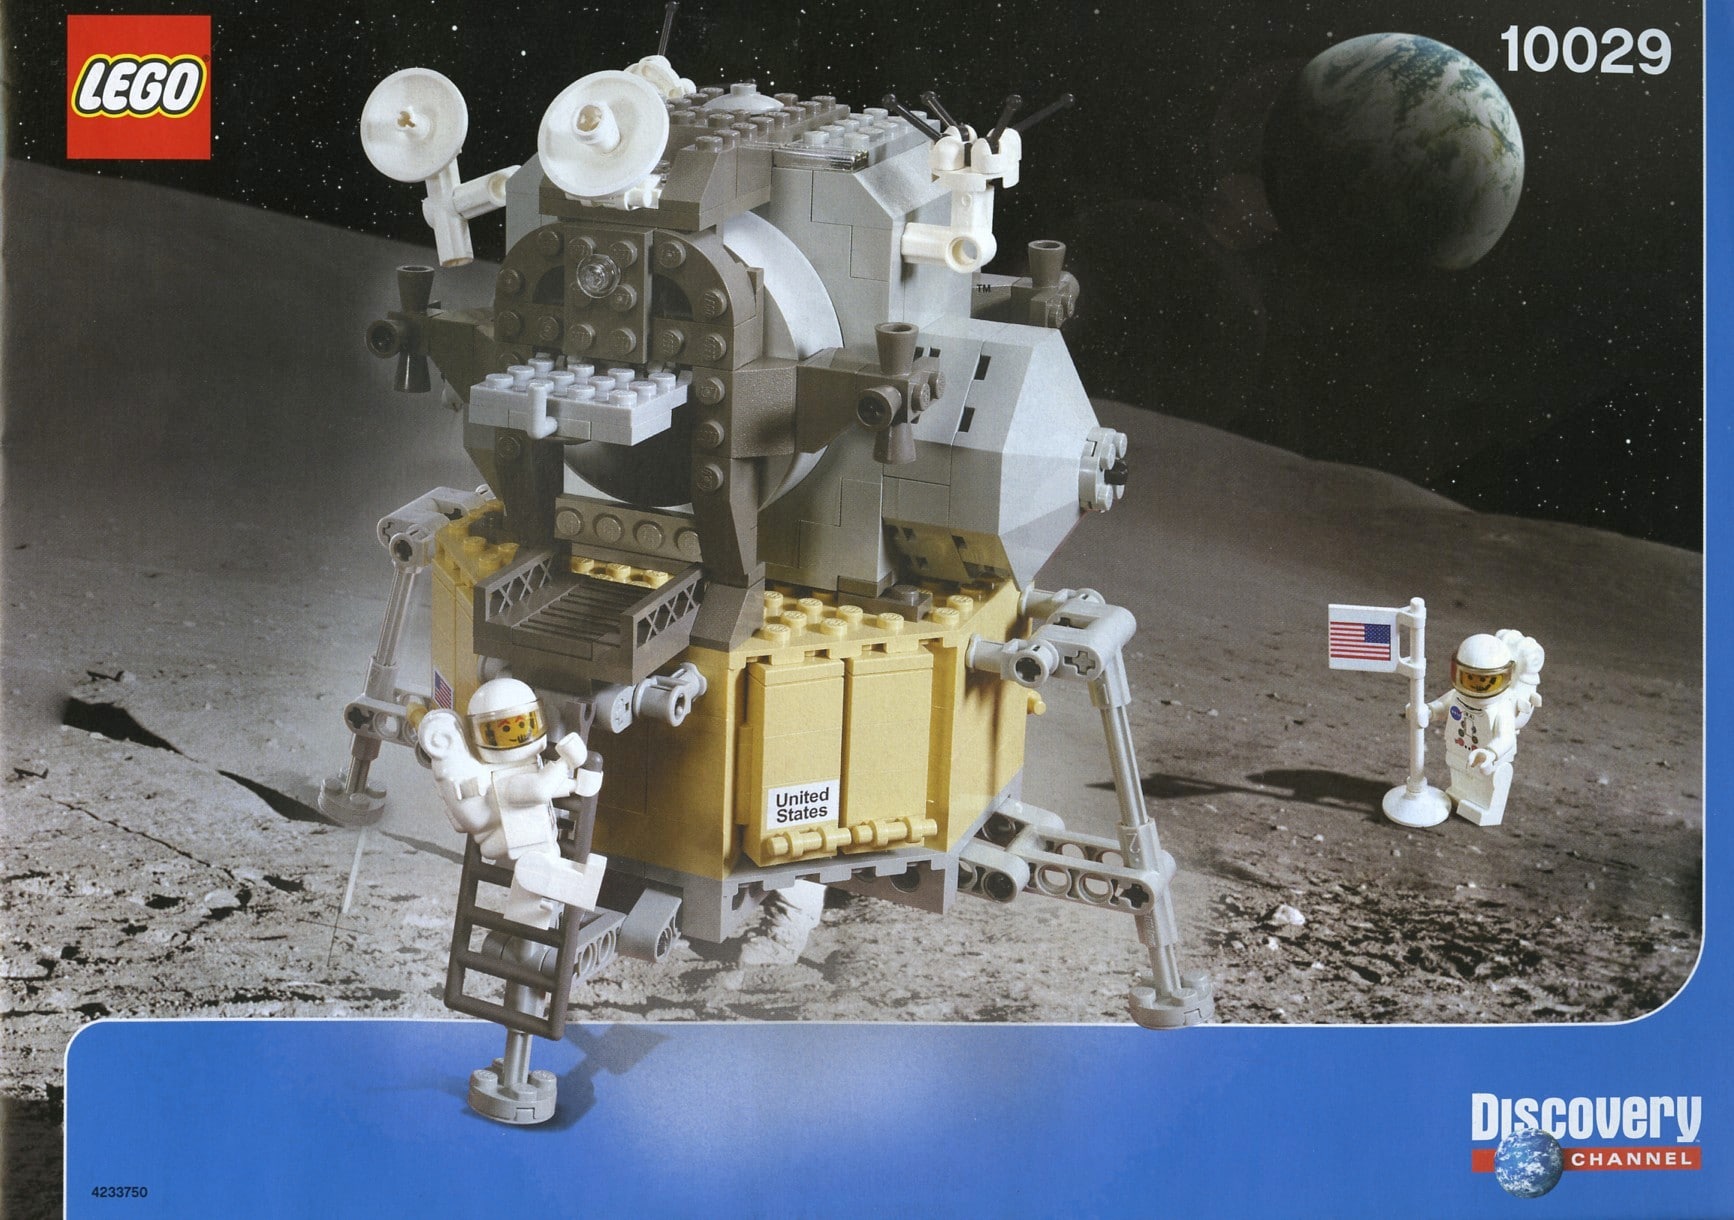 LEGO 10029 Lunar Lander